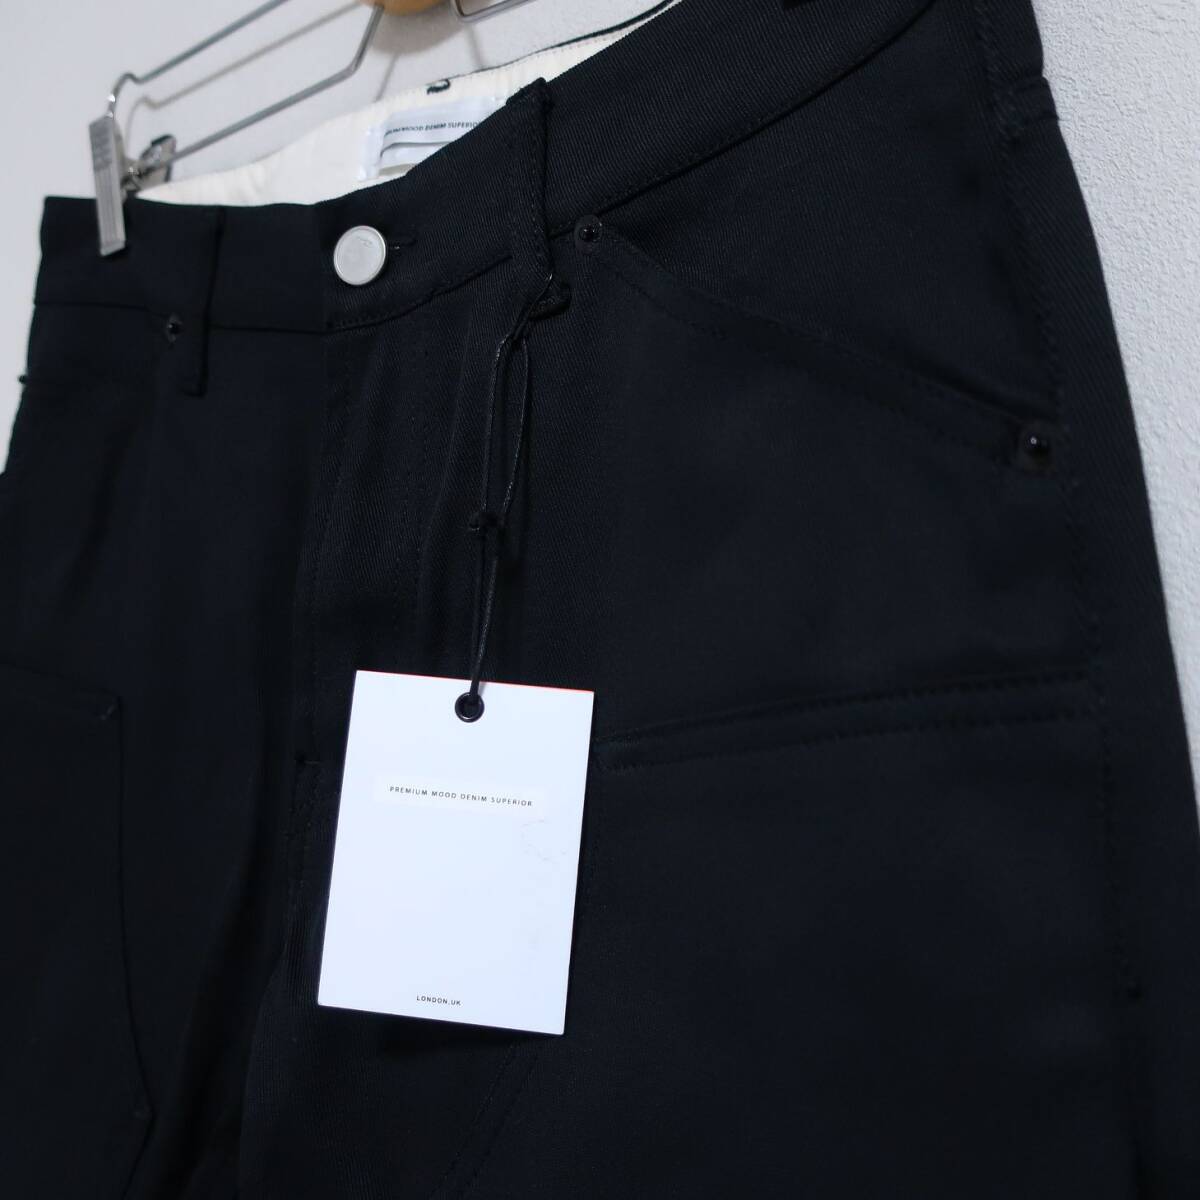 新品 未使用 P.M.D.S. PREMIUM MOOD DENIM SUPERIOR イタリア製 美脚 デニム カーゴ ジーンズ パンツ PMDS 黒 ブラック メンズ W30 Mサイズ